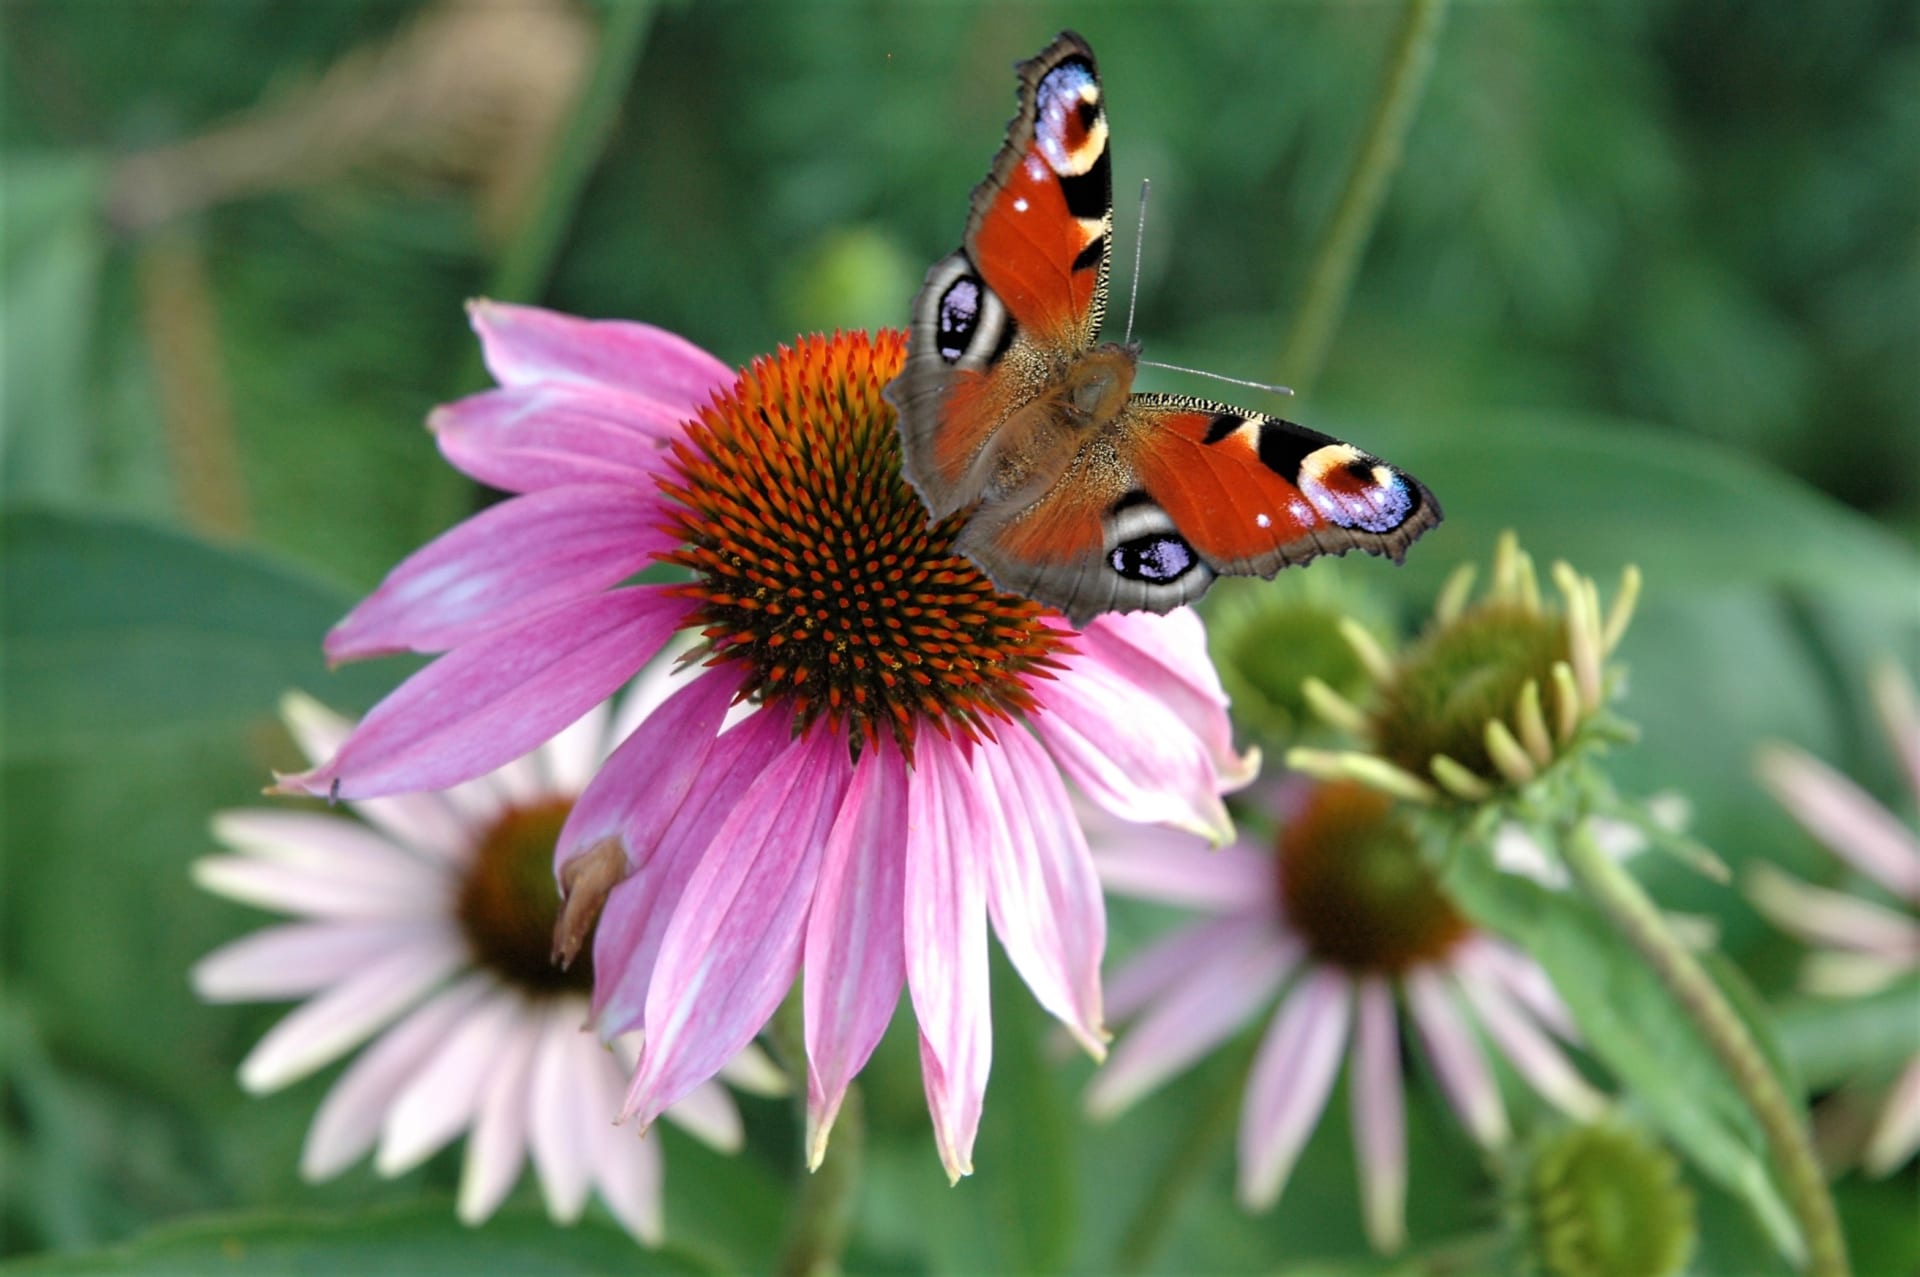 Březnový výsev léčivých bylin: echinacea (Echinacea purpurea), česky třapatovka nachová postaru třapatka, je nádhernou květinou, která v létě zdobí zahrádky a balkony, ale především je uznávanou léčivou bylinou